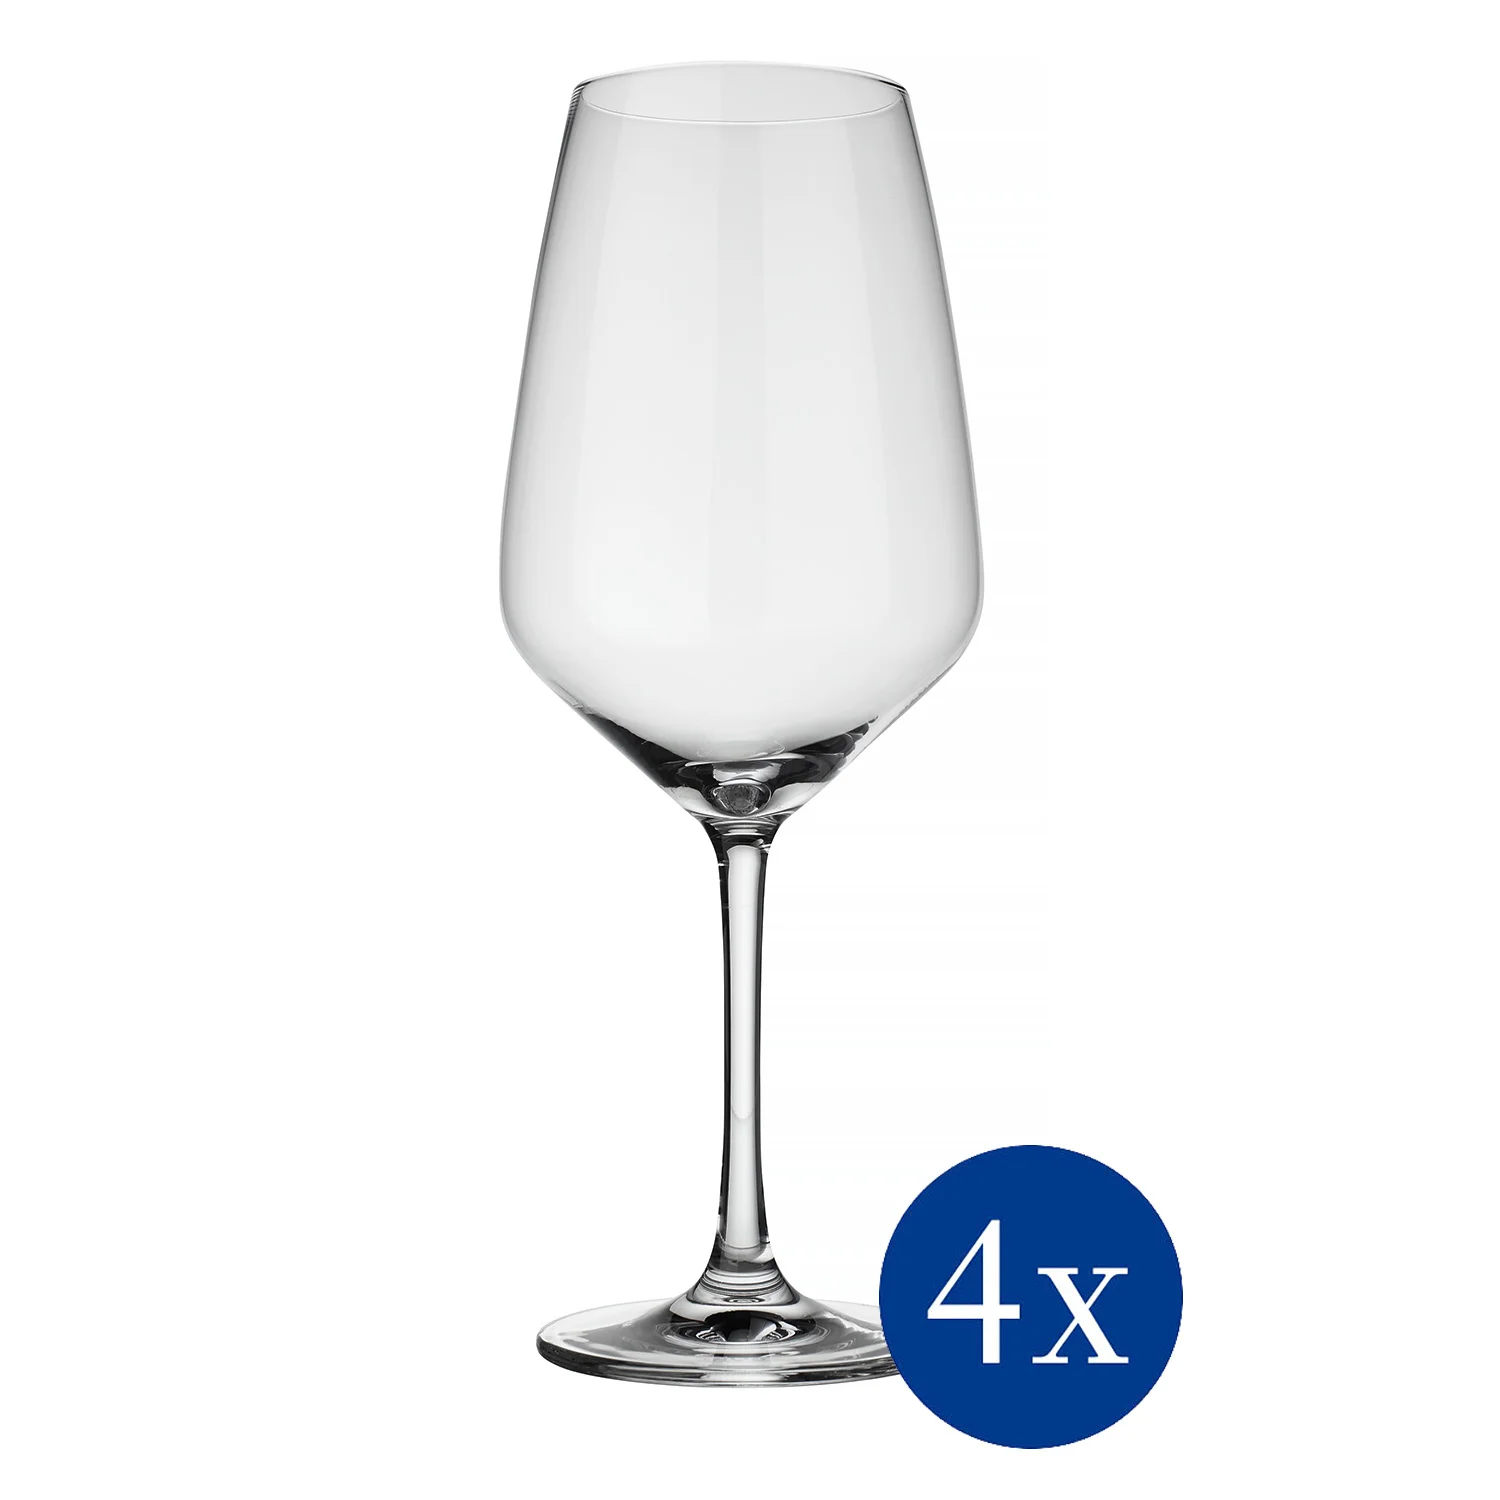 Voice Basic Glass Набор бокалов для красного вина 500 мл, 4 шт